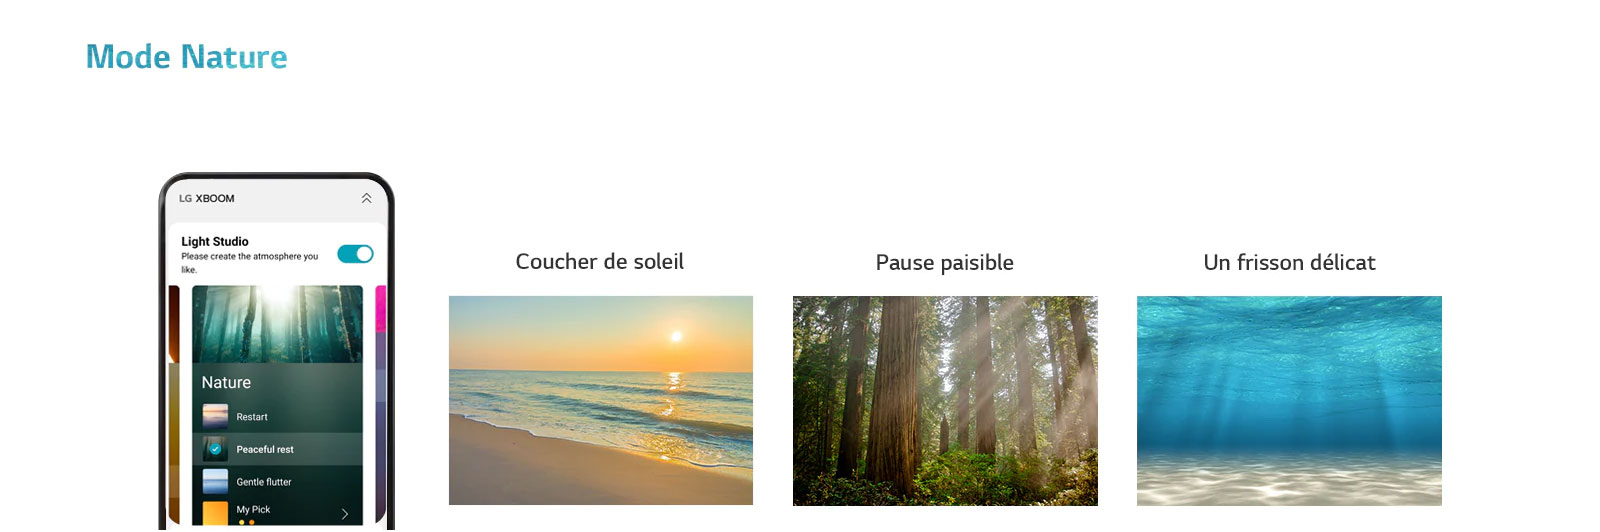 Image d’un téléphone portable avec l’écran APP allumé dans le mode Nature. Image d’une plage au coucher du soleil. Image d’une forêt ensoleillée. Image d’une lumière resplendissante sous une mer claire.